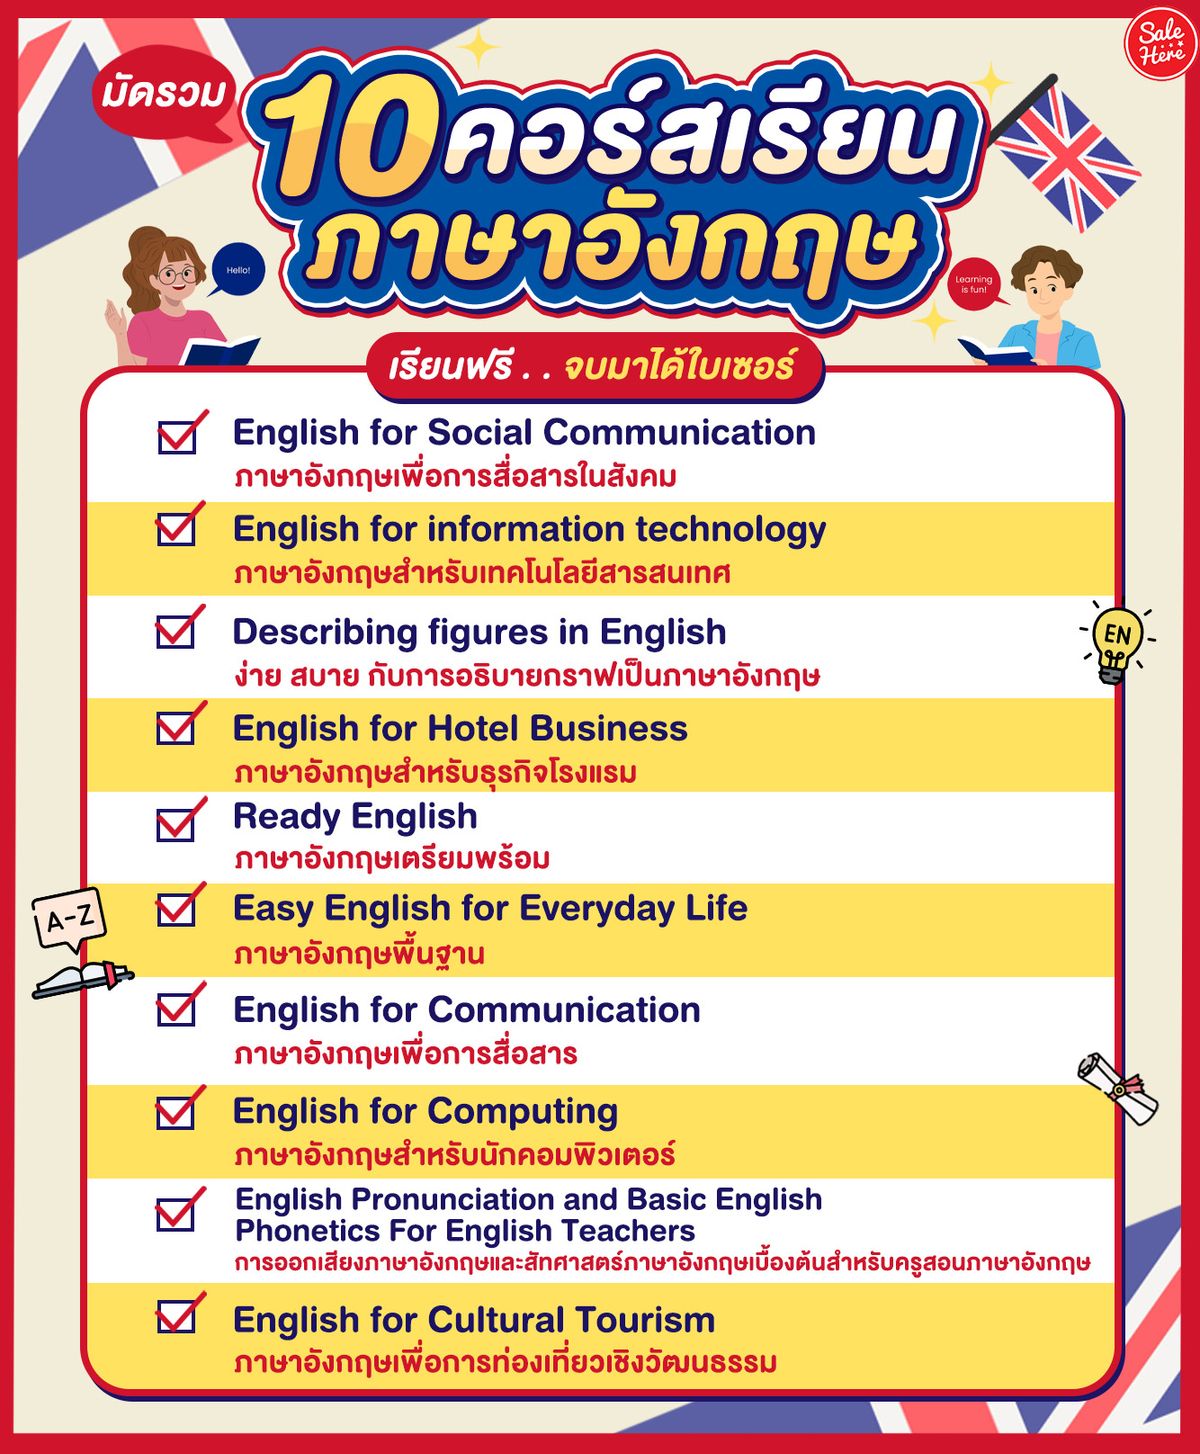 รวม 10 คอร์สเรียนภาษาอังกฤษ เรียนฟรี จบมาได้ใบเซอร์ สิงหาคม 2023 - Sale Here